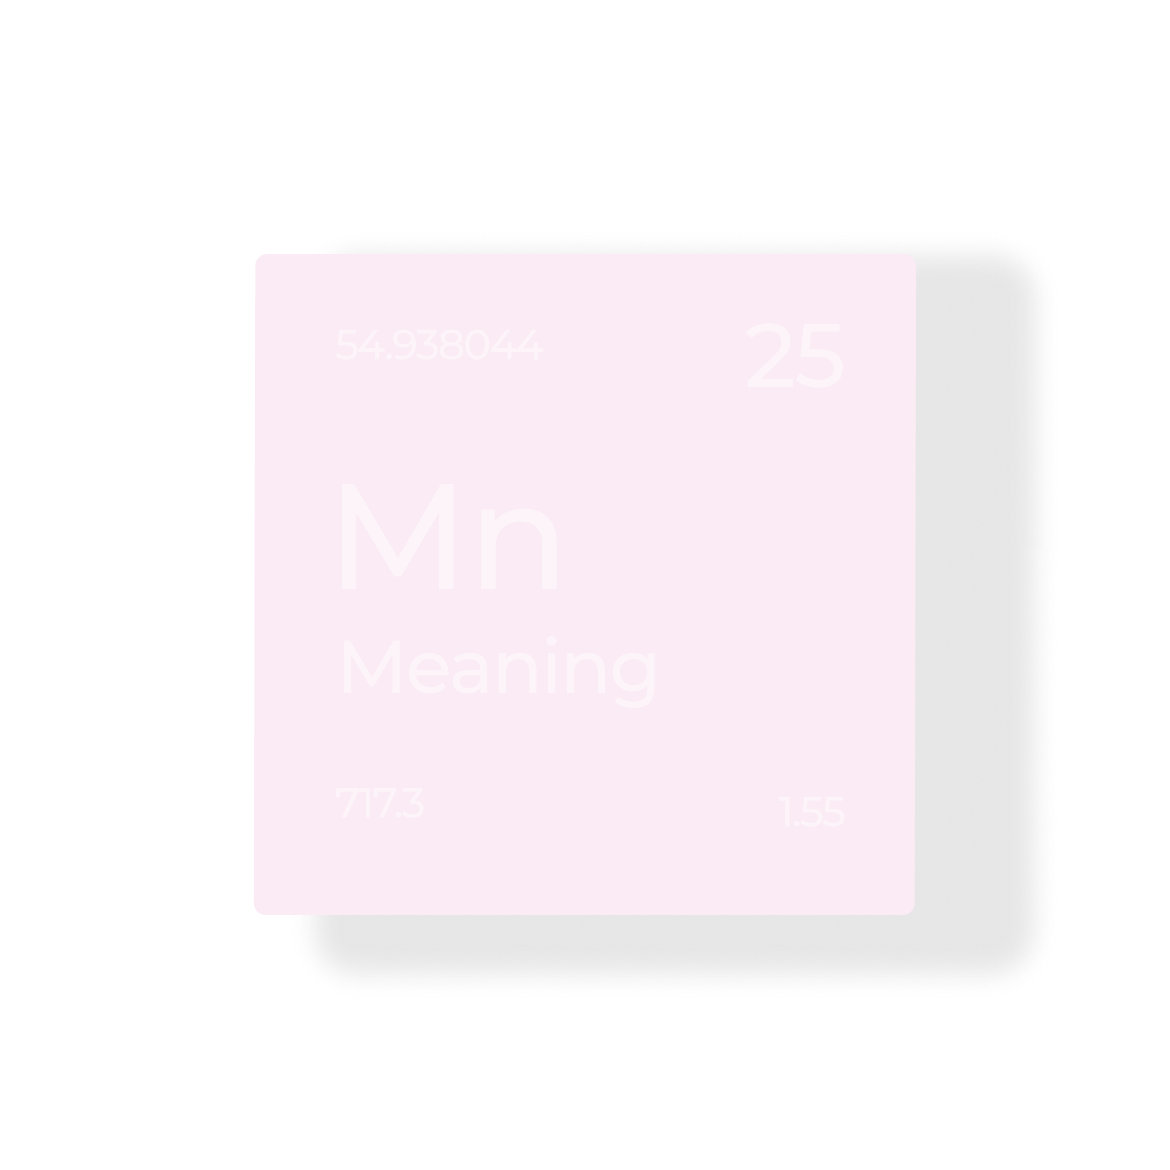 карточка похожая на химический элемент с элементом под названием Значение